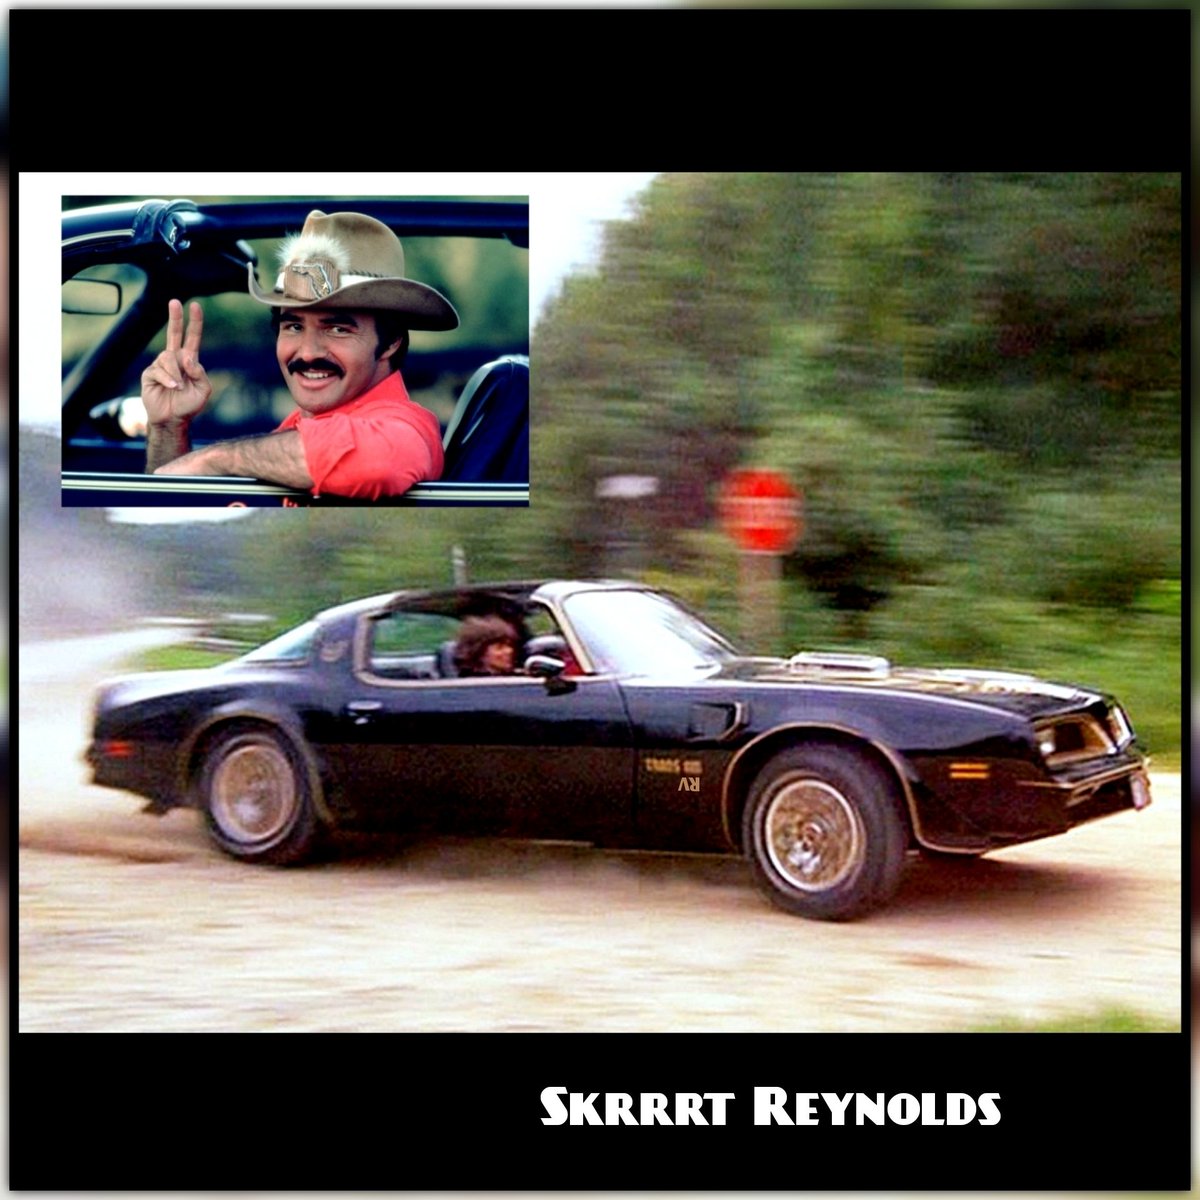 🛣🏎🌟💨🍃🚓🏝
#burtreynolds #skrrrtreynolds #skrrrt #skrrt #transam #smokeyandthebandit #lol #funny #memes #nfts #art #comedian #vogtcollection #vogtart #comedy #smilemore #mashup #TV #laugh #viral #fyp #movies #actor #smile #hollywood #smile #racing #car #smokey #bandit #burt